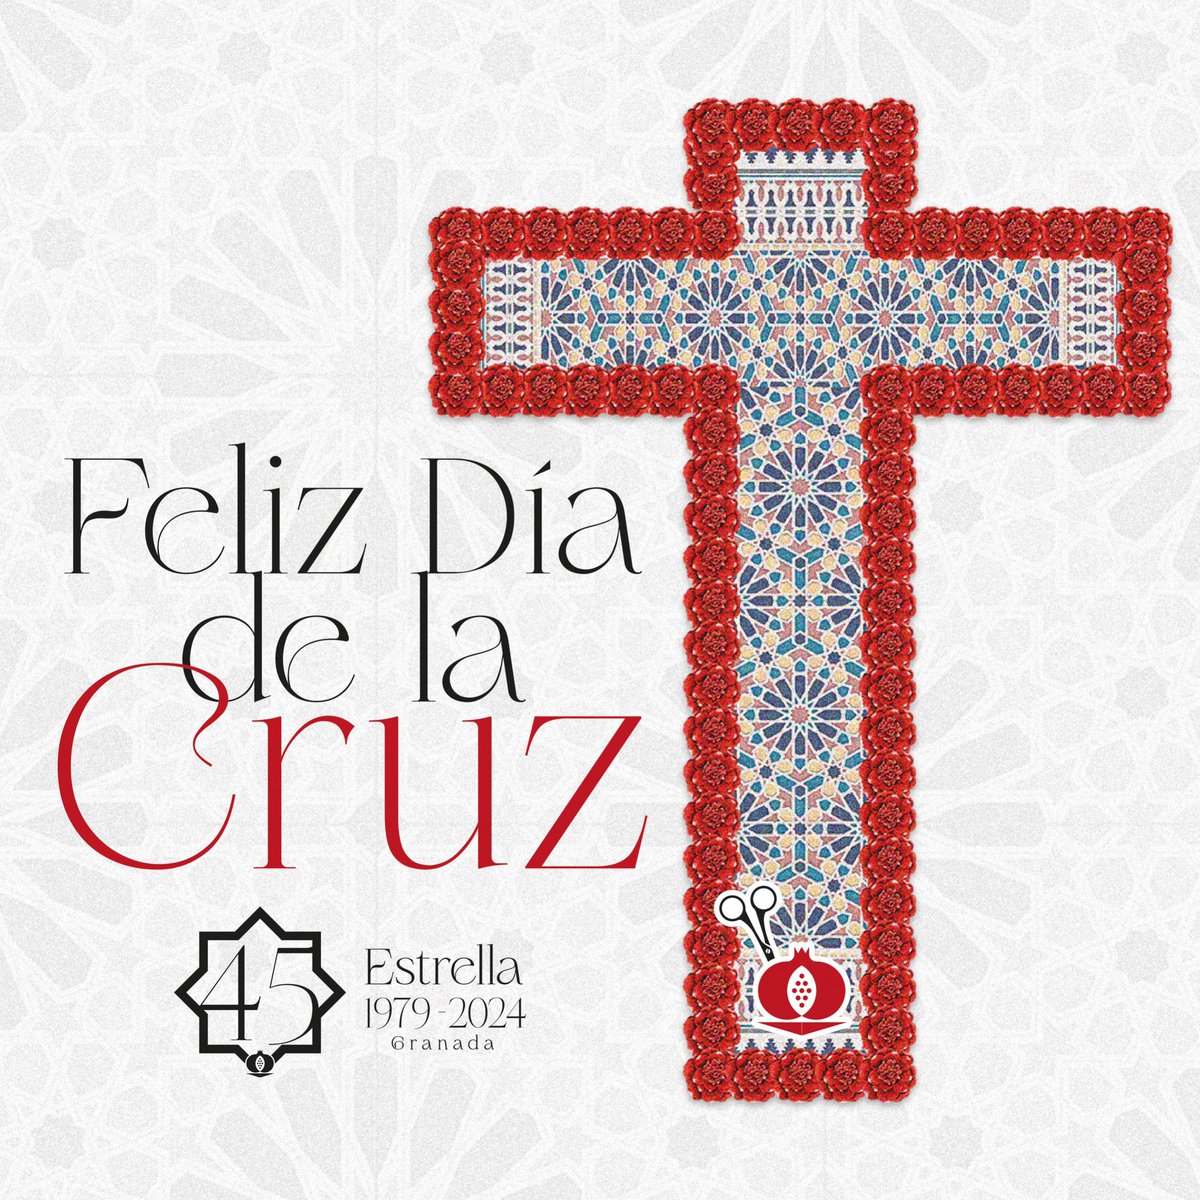 Hoy es un día grande en nuestra ciudad... La cruz que porta Nuestro Padre cada Jueves Santo se reviste de claveles para la festividad del dia de la Cruz. ¡Feliz día de la Cruz! #SuenaLaDecana45